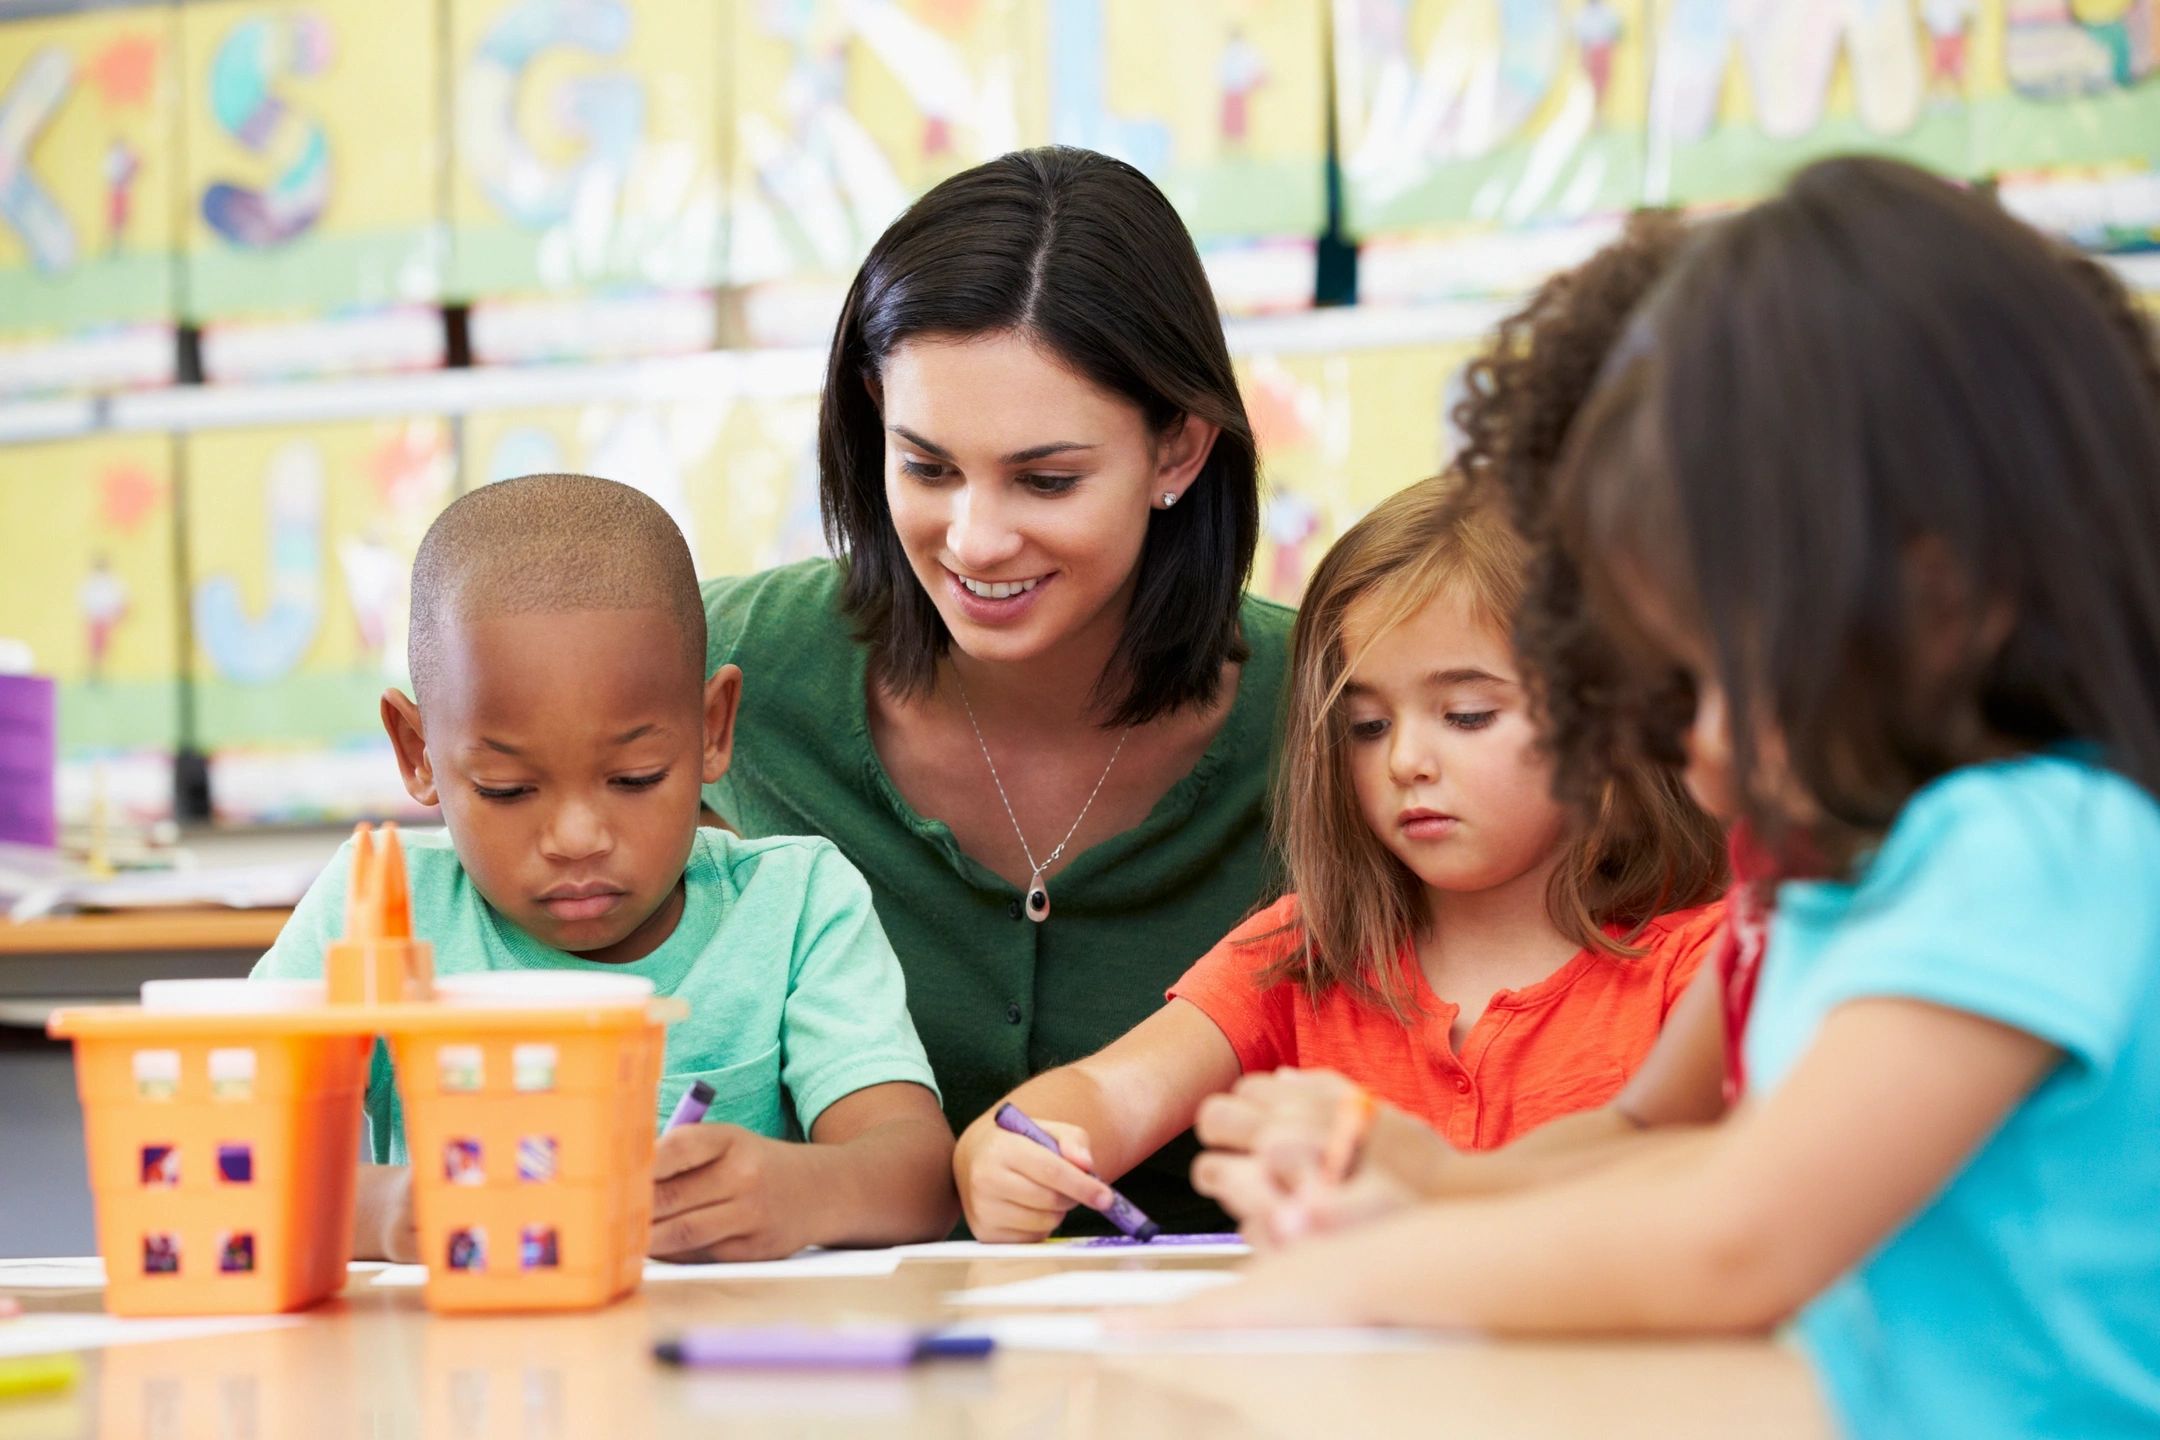 Triple R Child Care - Child Care, Daycare, Preschool